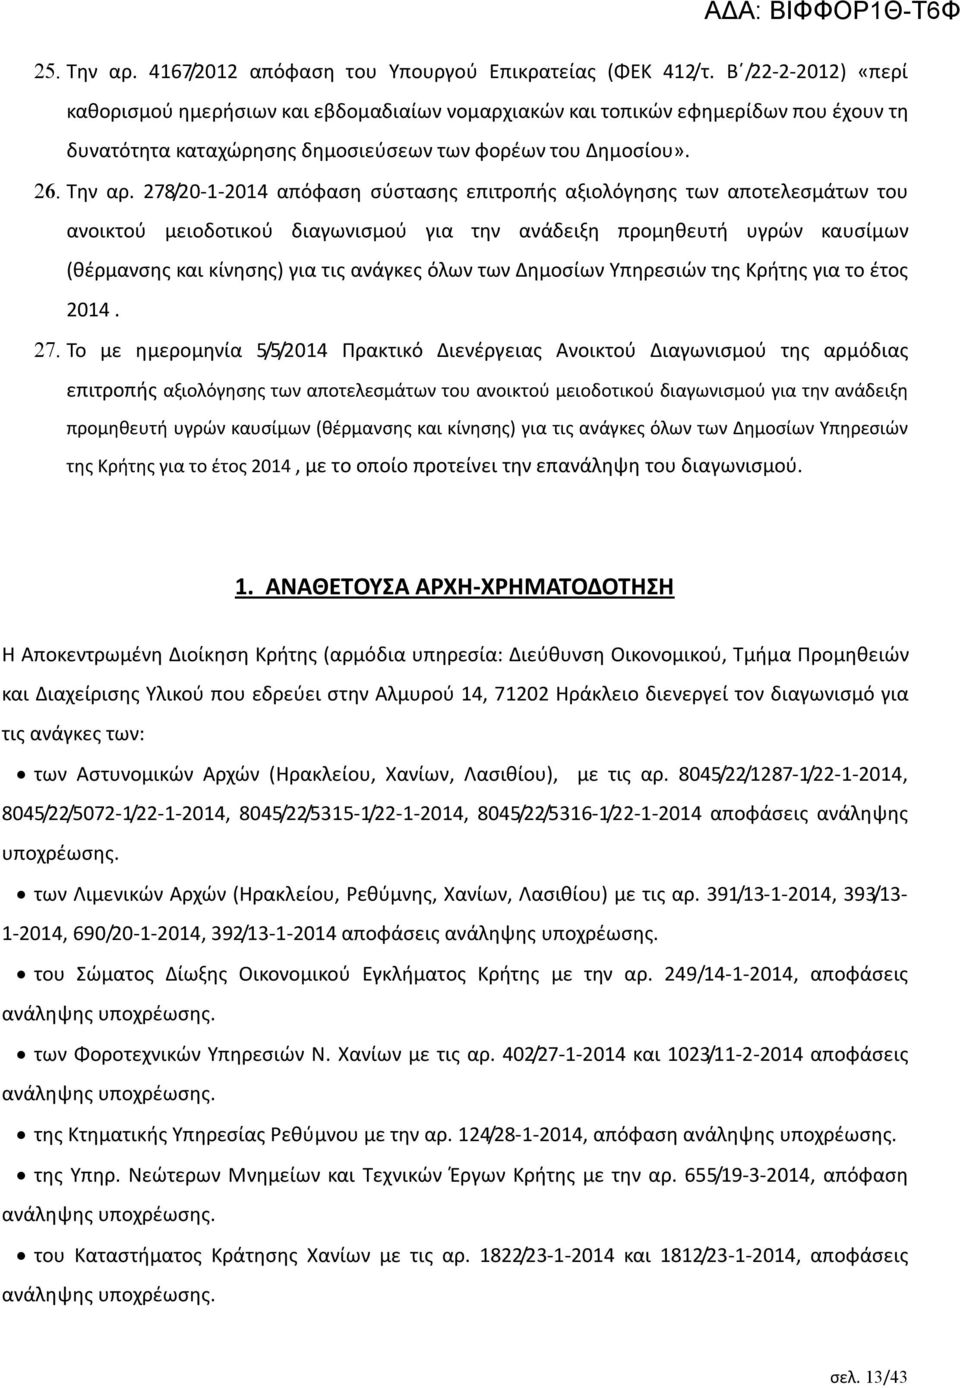 278/20-1-2014 απόφαση σύστασης επιτροπής αξιολόγησης των αποτελεσμάτων του ανοικτού μειοδοτικού διαγωνισμού για την ανάδειξη προμηθευτή υγρών καυσίμων (θέρμανσης και κίνησης) για τις ανάγκες όλων των